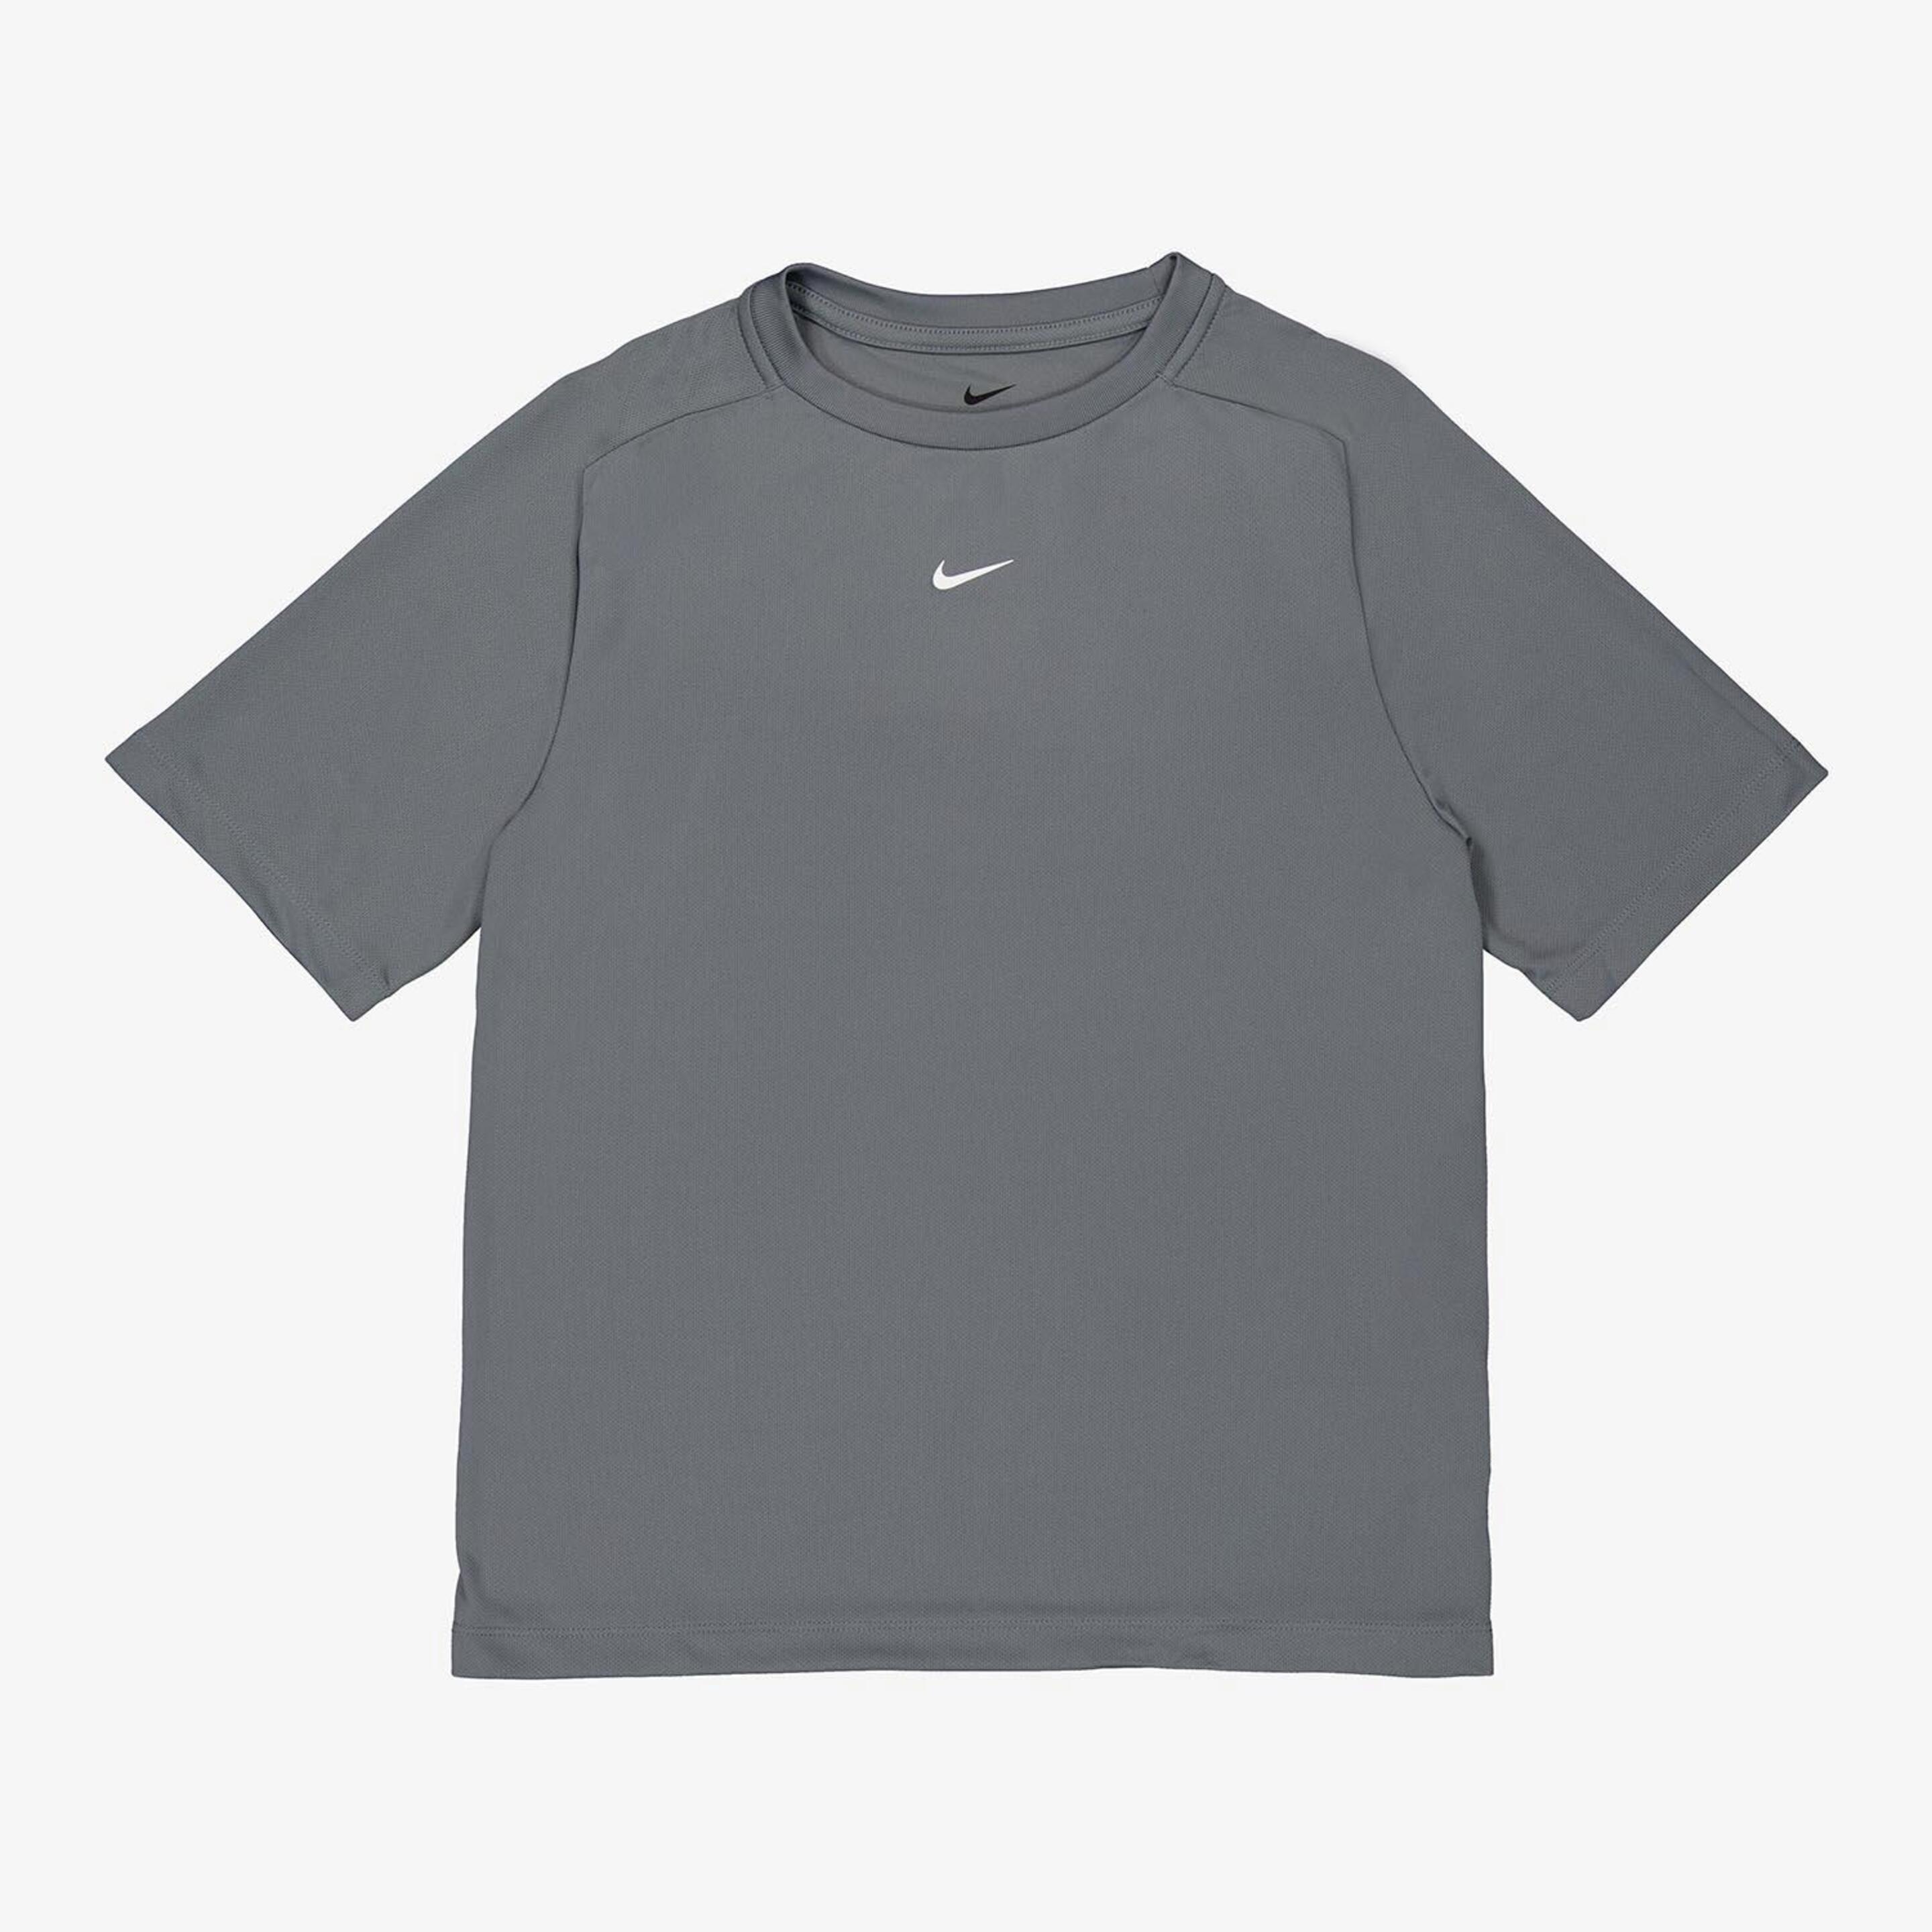 Camiseta Nike - gris - Camiseta Running Niño